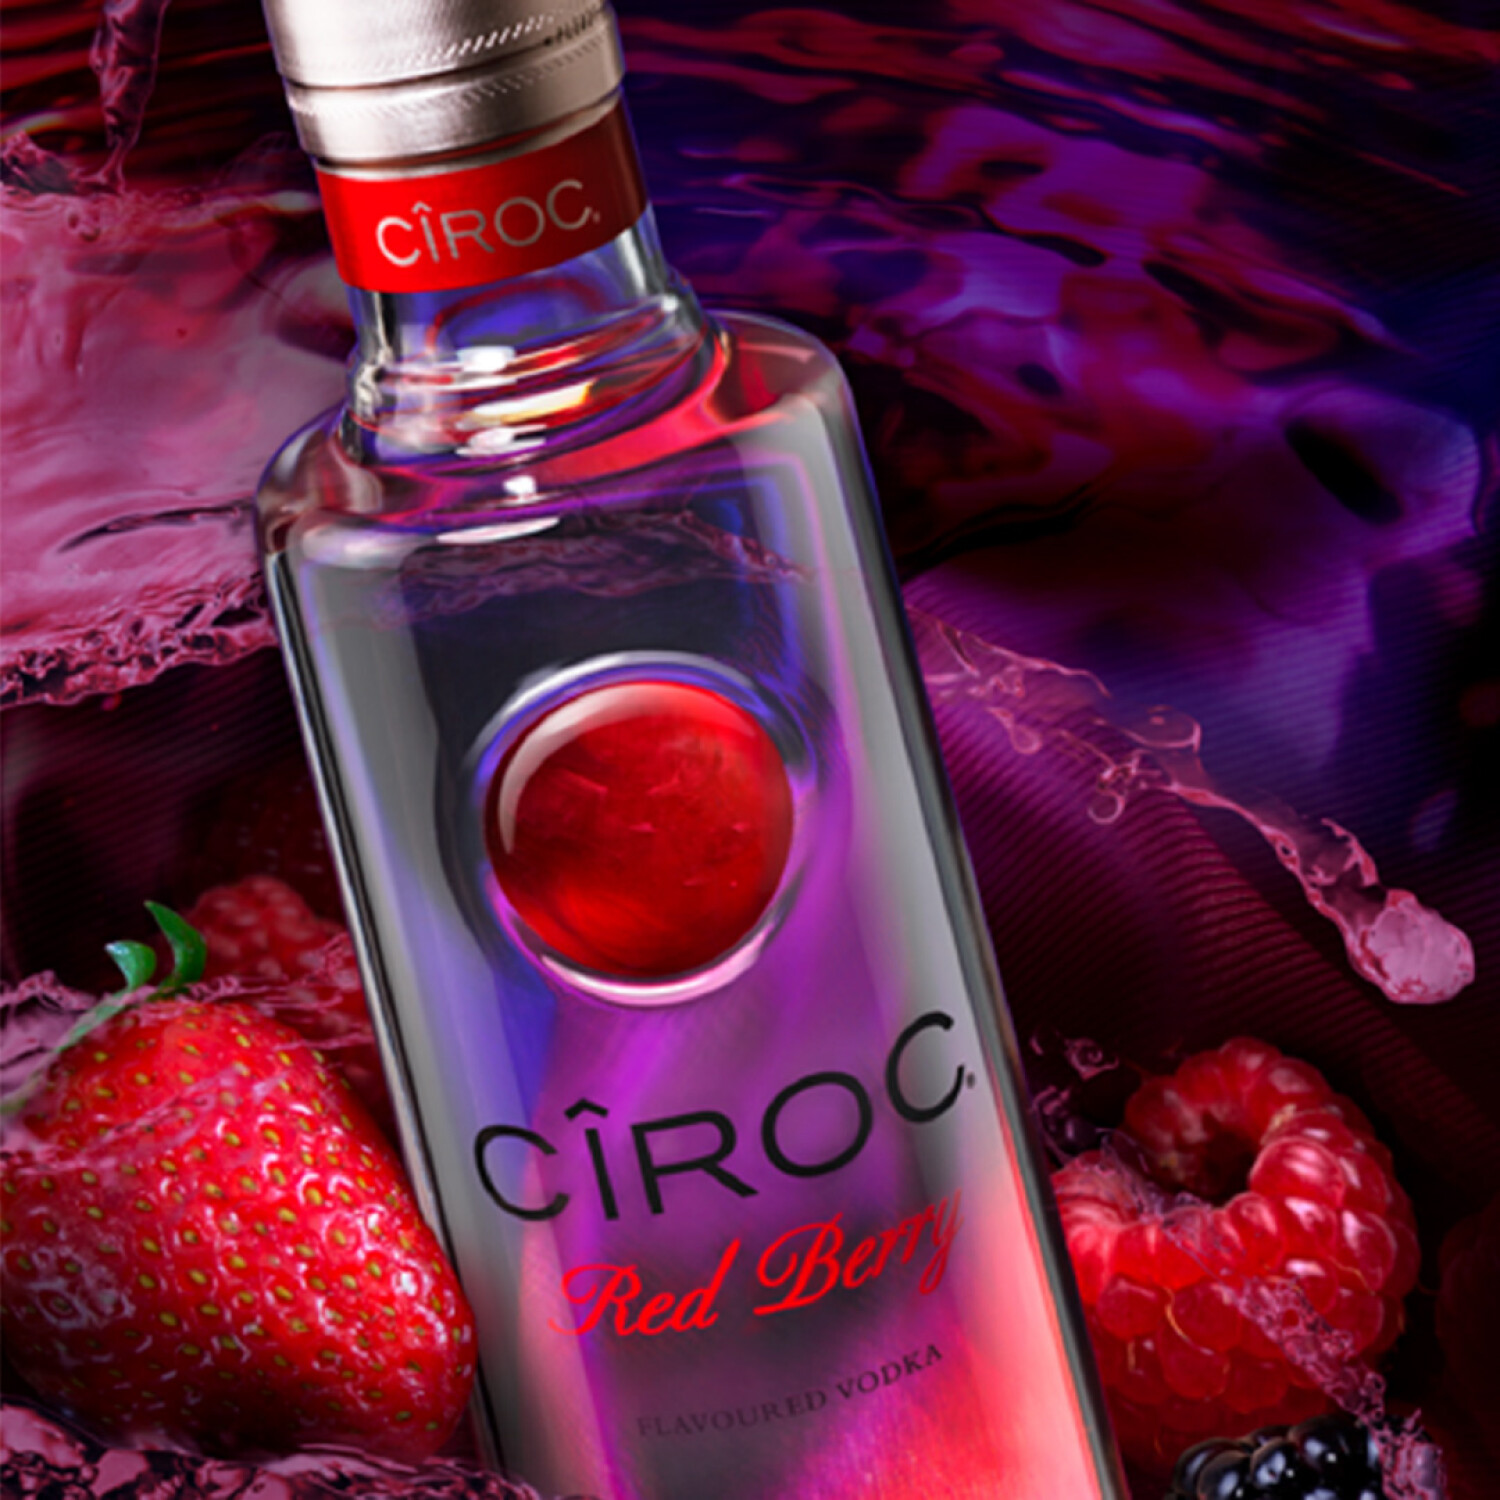 OnWine - 𝐕𝐨𝐝𝐤𝐚 𝐂𝐢̂𝐫𝐨𝐜 🍸 Goûtez aux arômes gourmands et intenses  de la Vodka Cîroc! Cîroc Ultra Premium, Cîroc Ananas🍍, Cîroc Framboise 🍓,  Cîroc Coco 🥥, idéal pour composer des cocktails savoureux